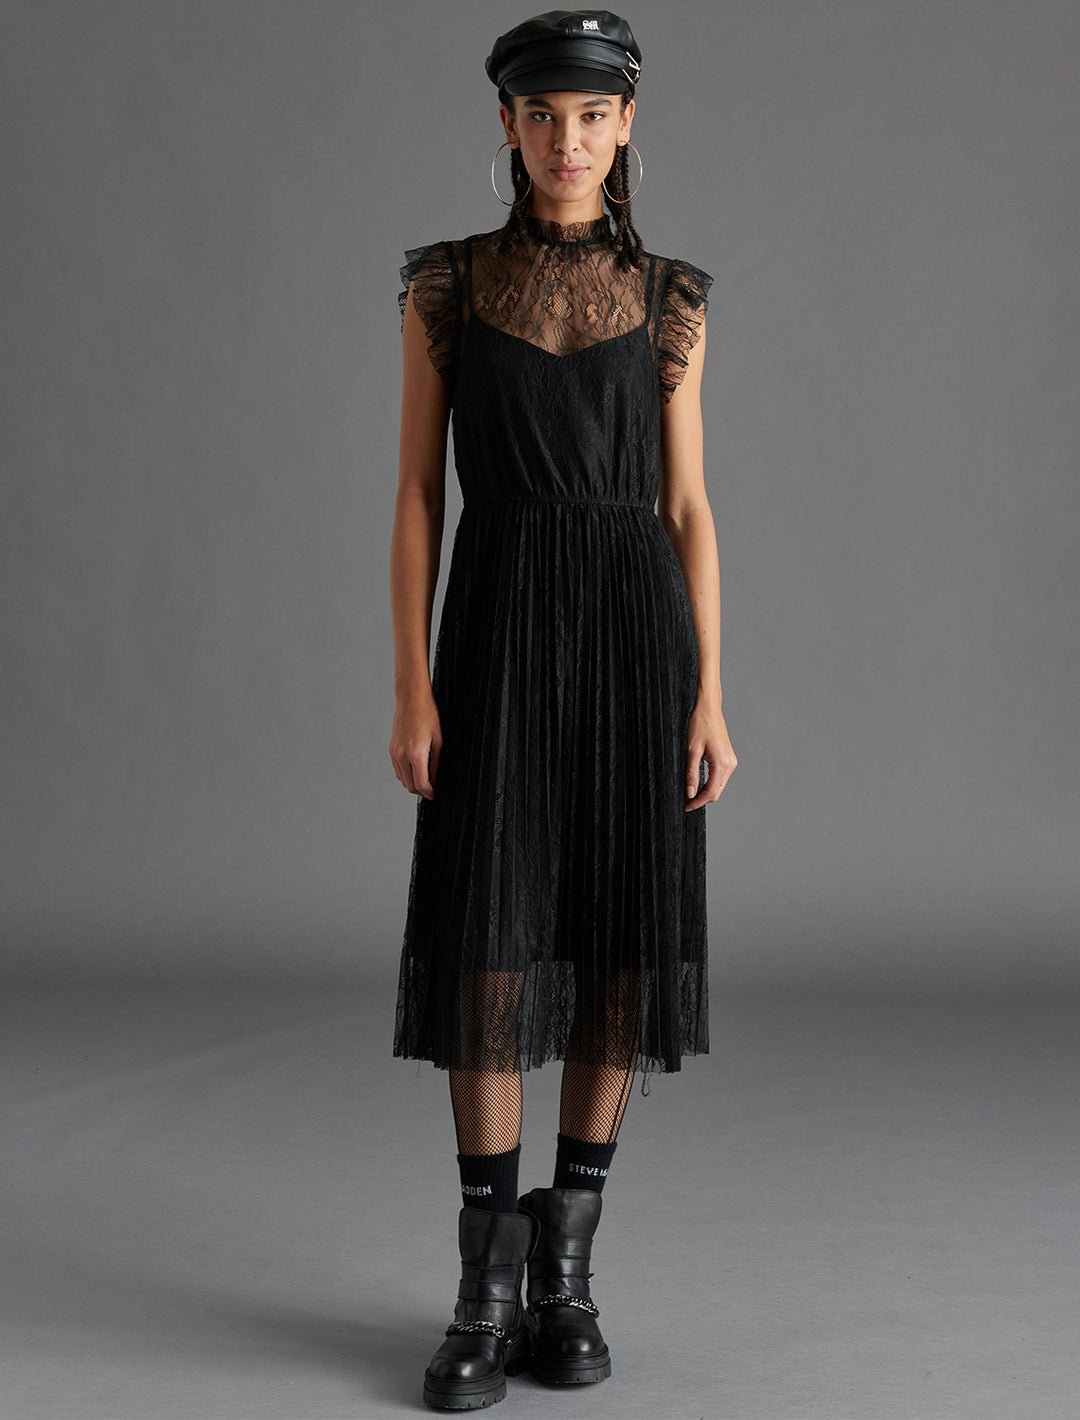 Model wearing Steve Madden's Izzo Dress in Black.